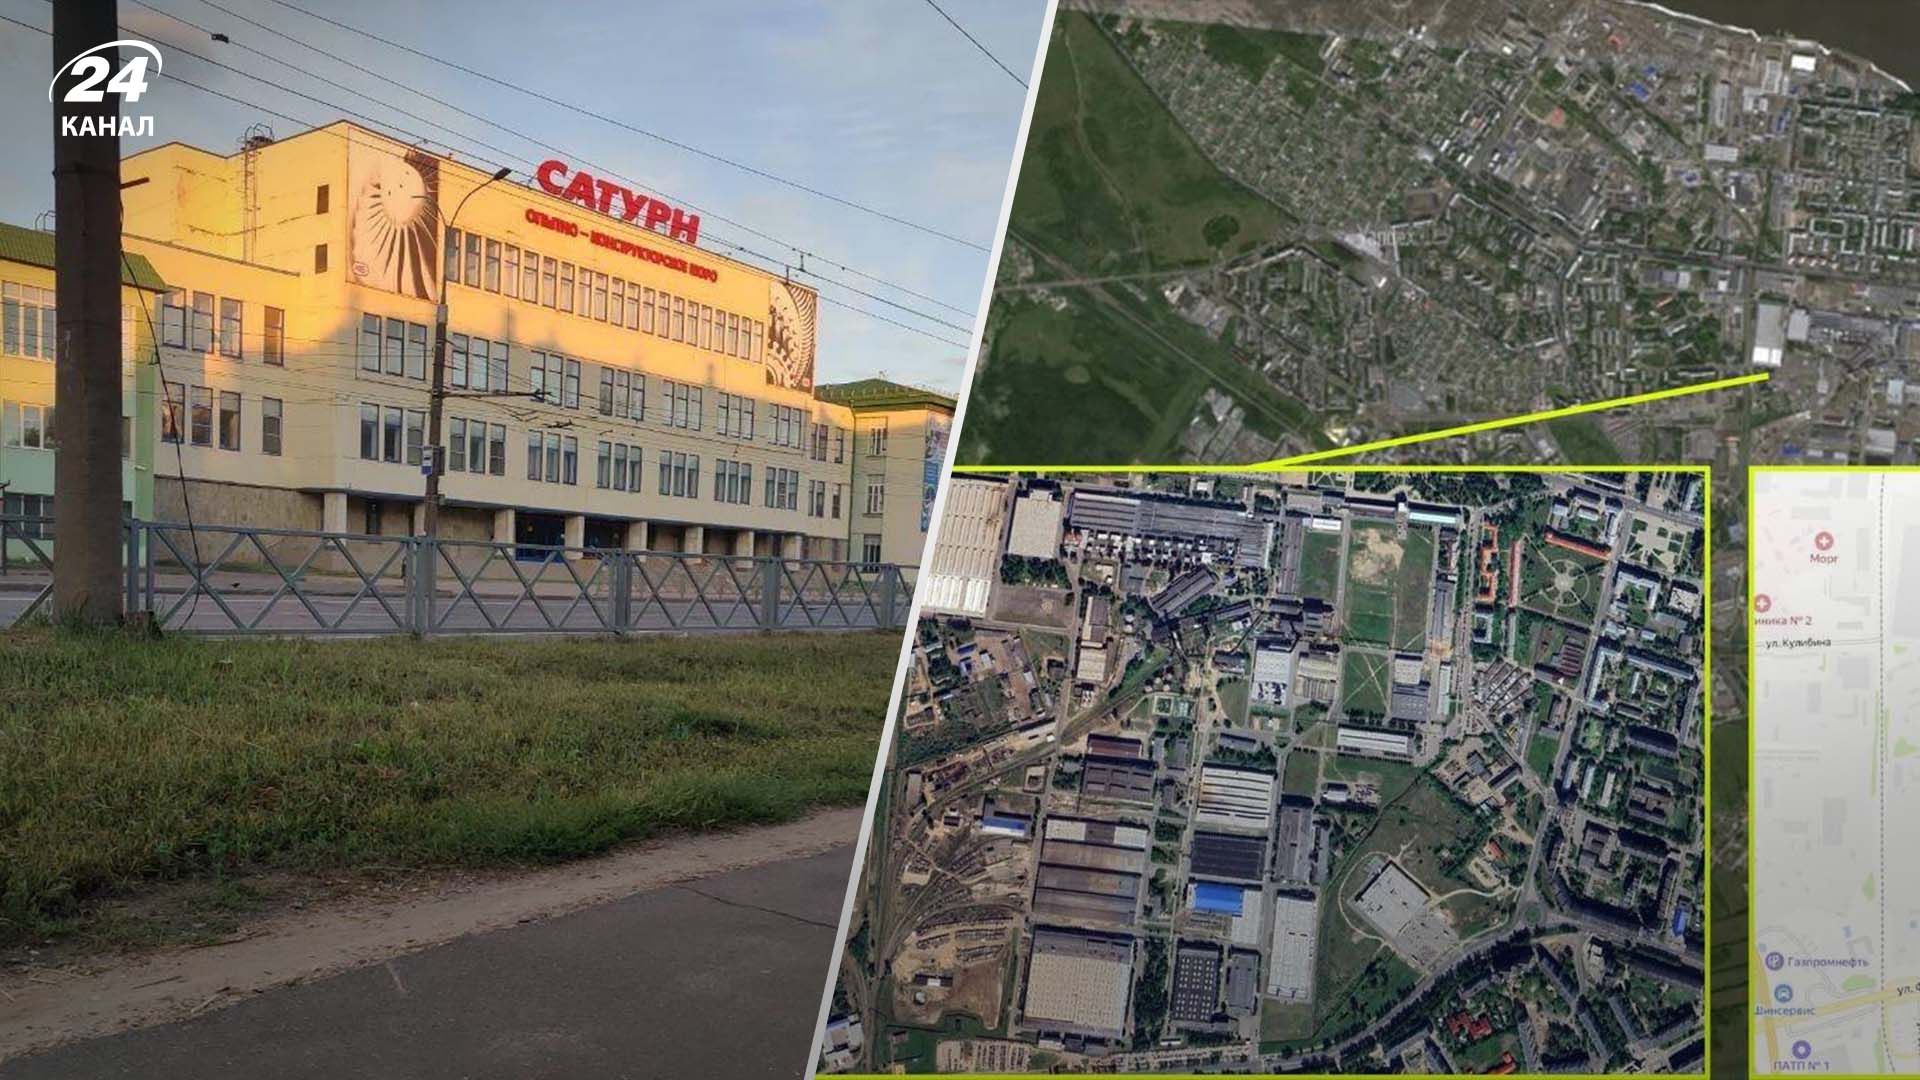 Партизани "Атеш" пробралися на завод під Ярославлем